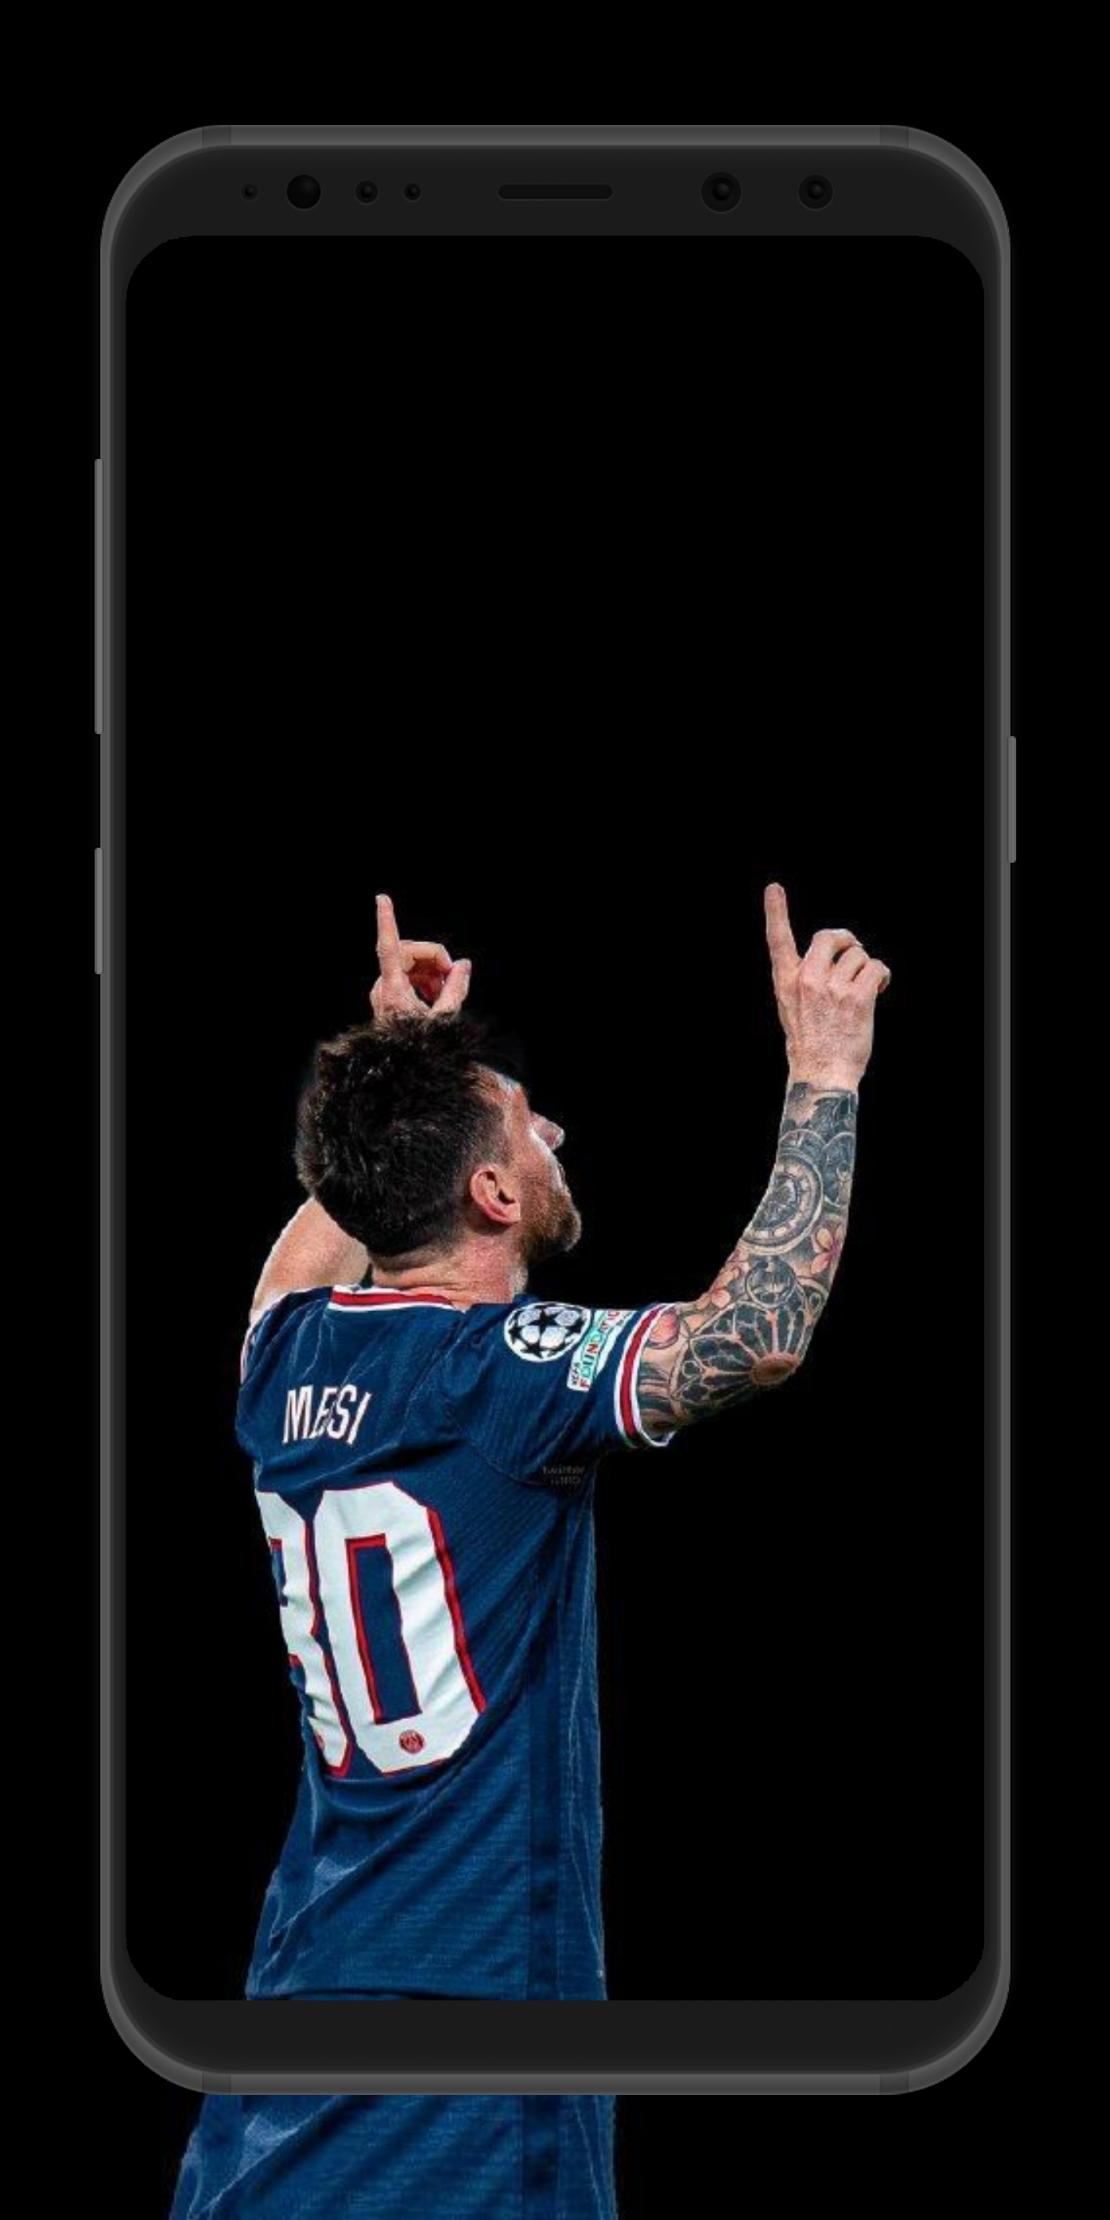 Bạn đang tìm kiếm một hình nền đẹp cho điện thoại của mình? Thử tải xuống APK Messi Psg Wallpaper cho Android nào! Với APK này, bạn có thể có được những bức hình nền trang trí cho điện thoại Android của bạn với Messi và Psg.